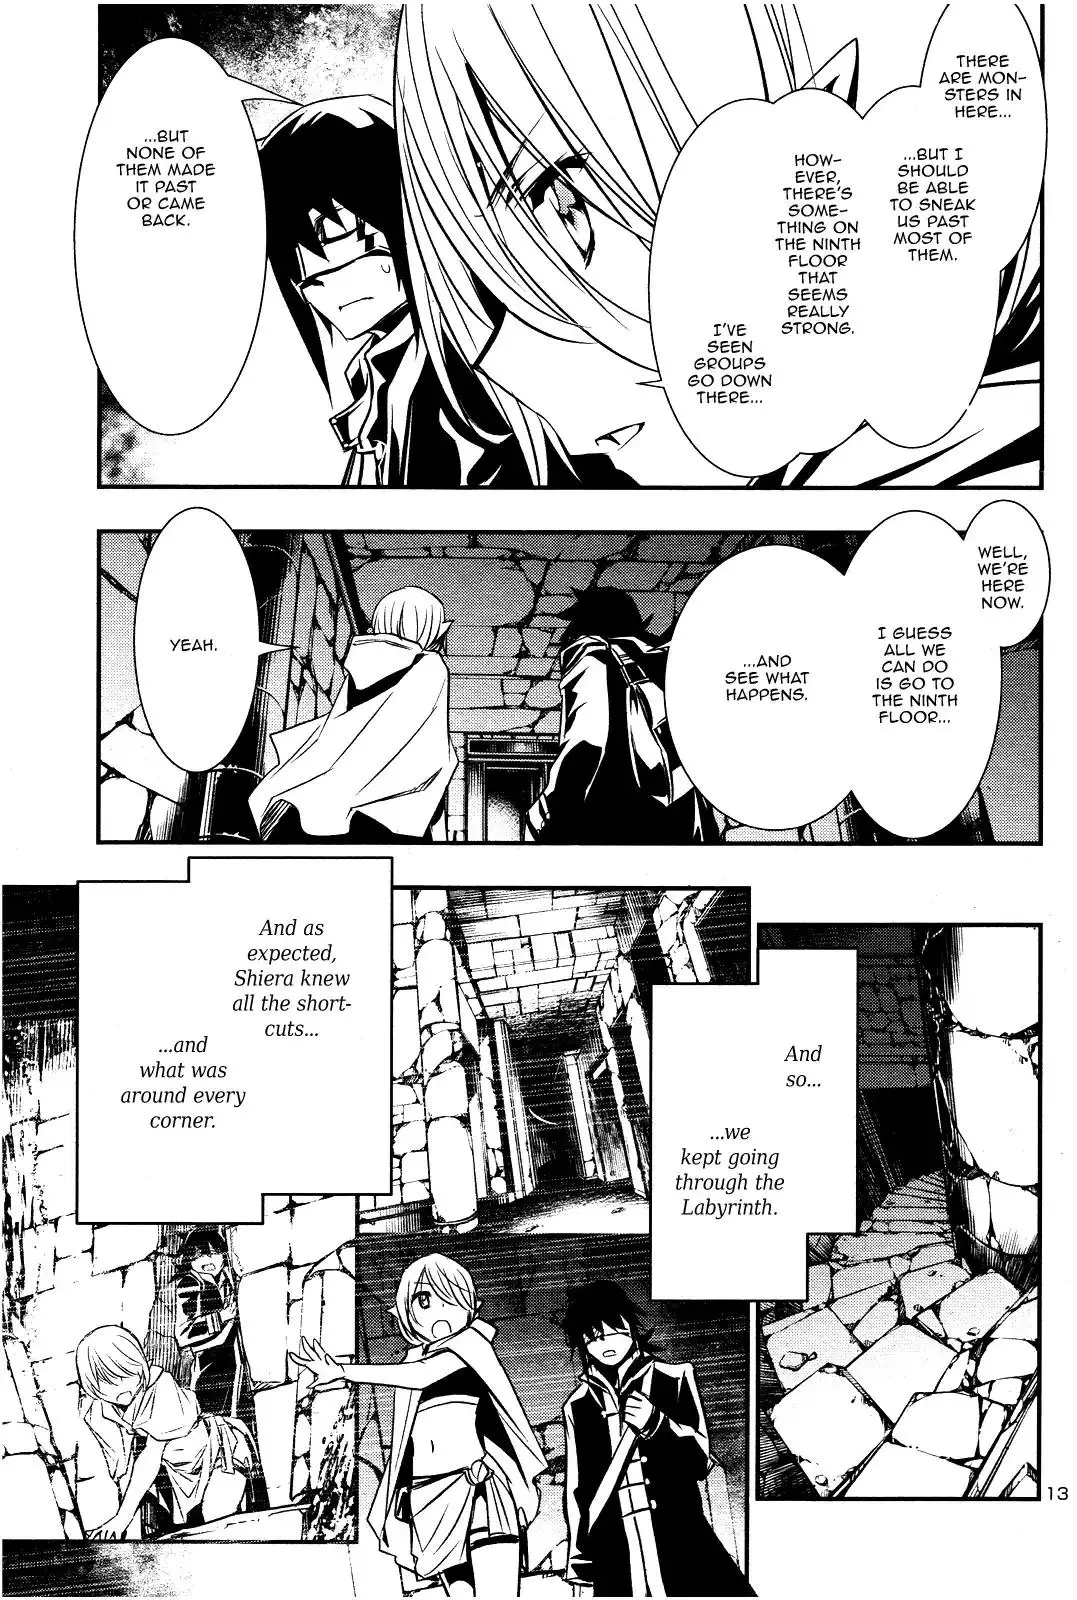 Shinju no Nectar - 17 page 11